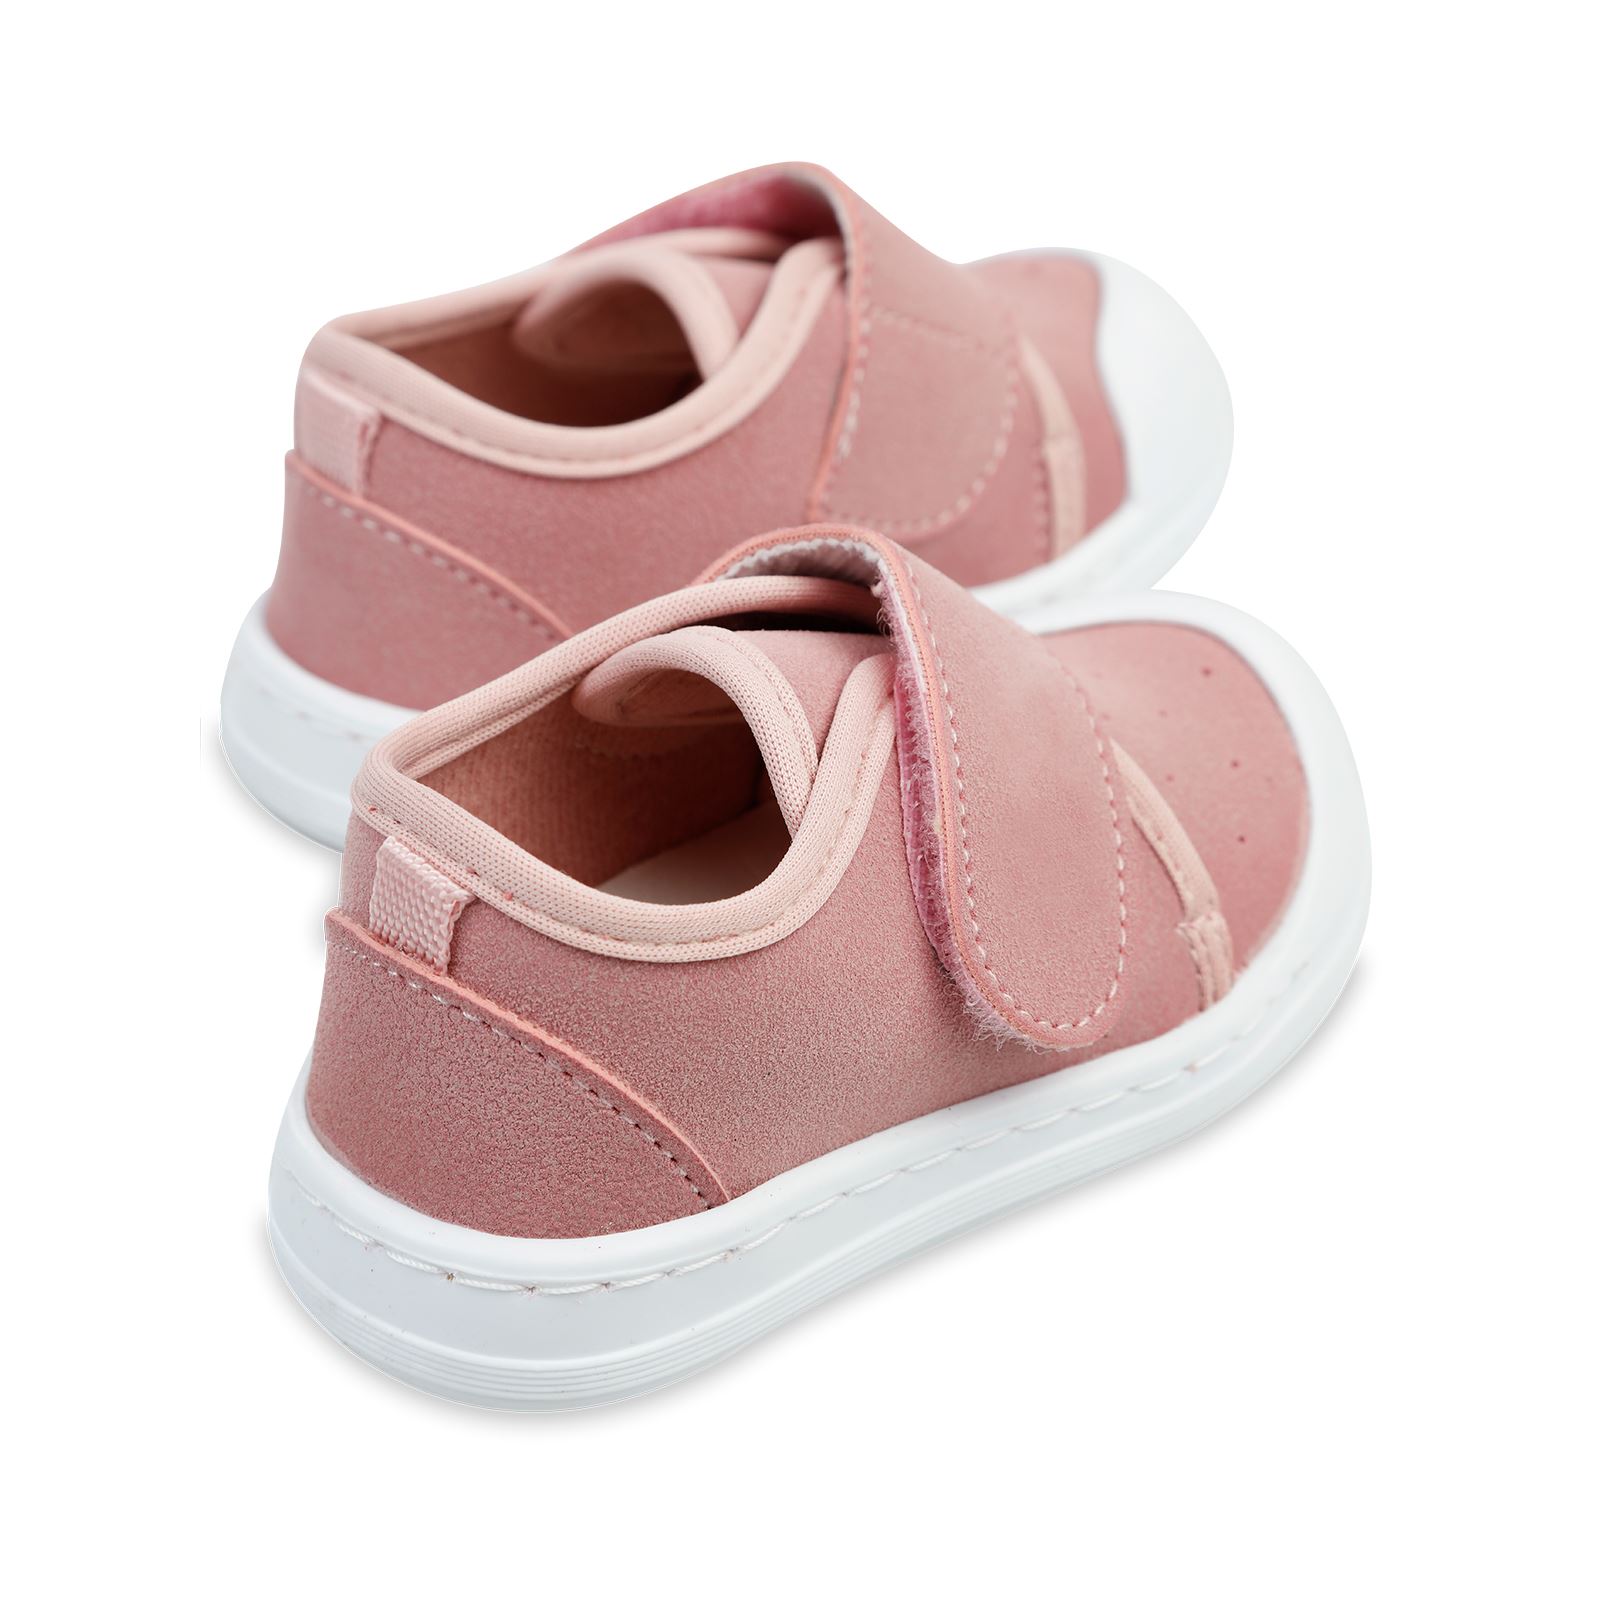 Civil Baby Kız Bebek Keten İlk Adım Ayakkabısı 19-21 Numara Pudra